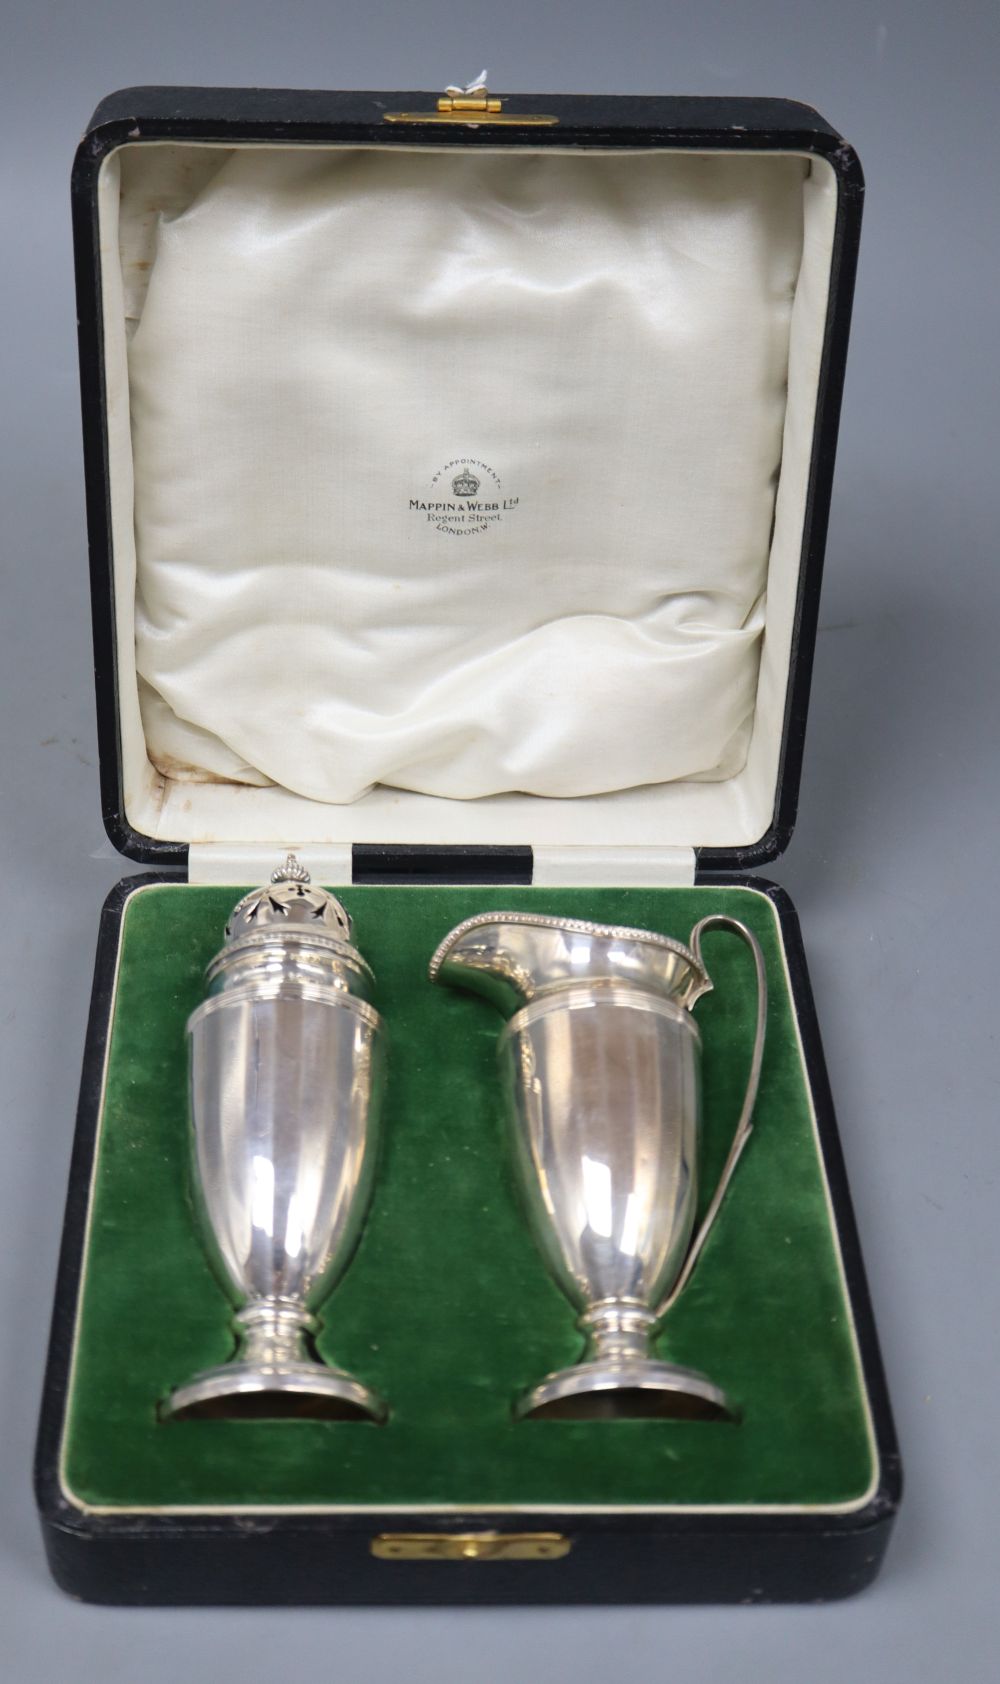 A cased George V silver cream jug and sugar caster by Mappin & Webb, Birmingham, 1925, 6 oz.